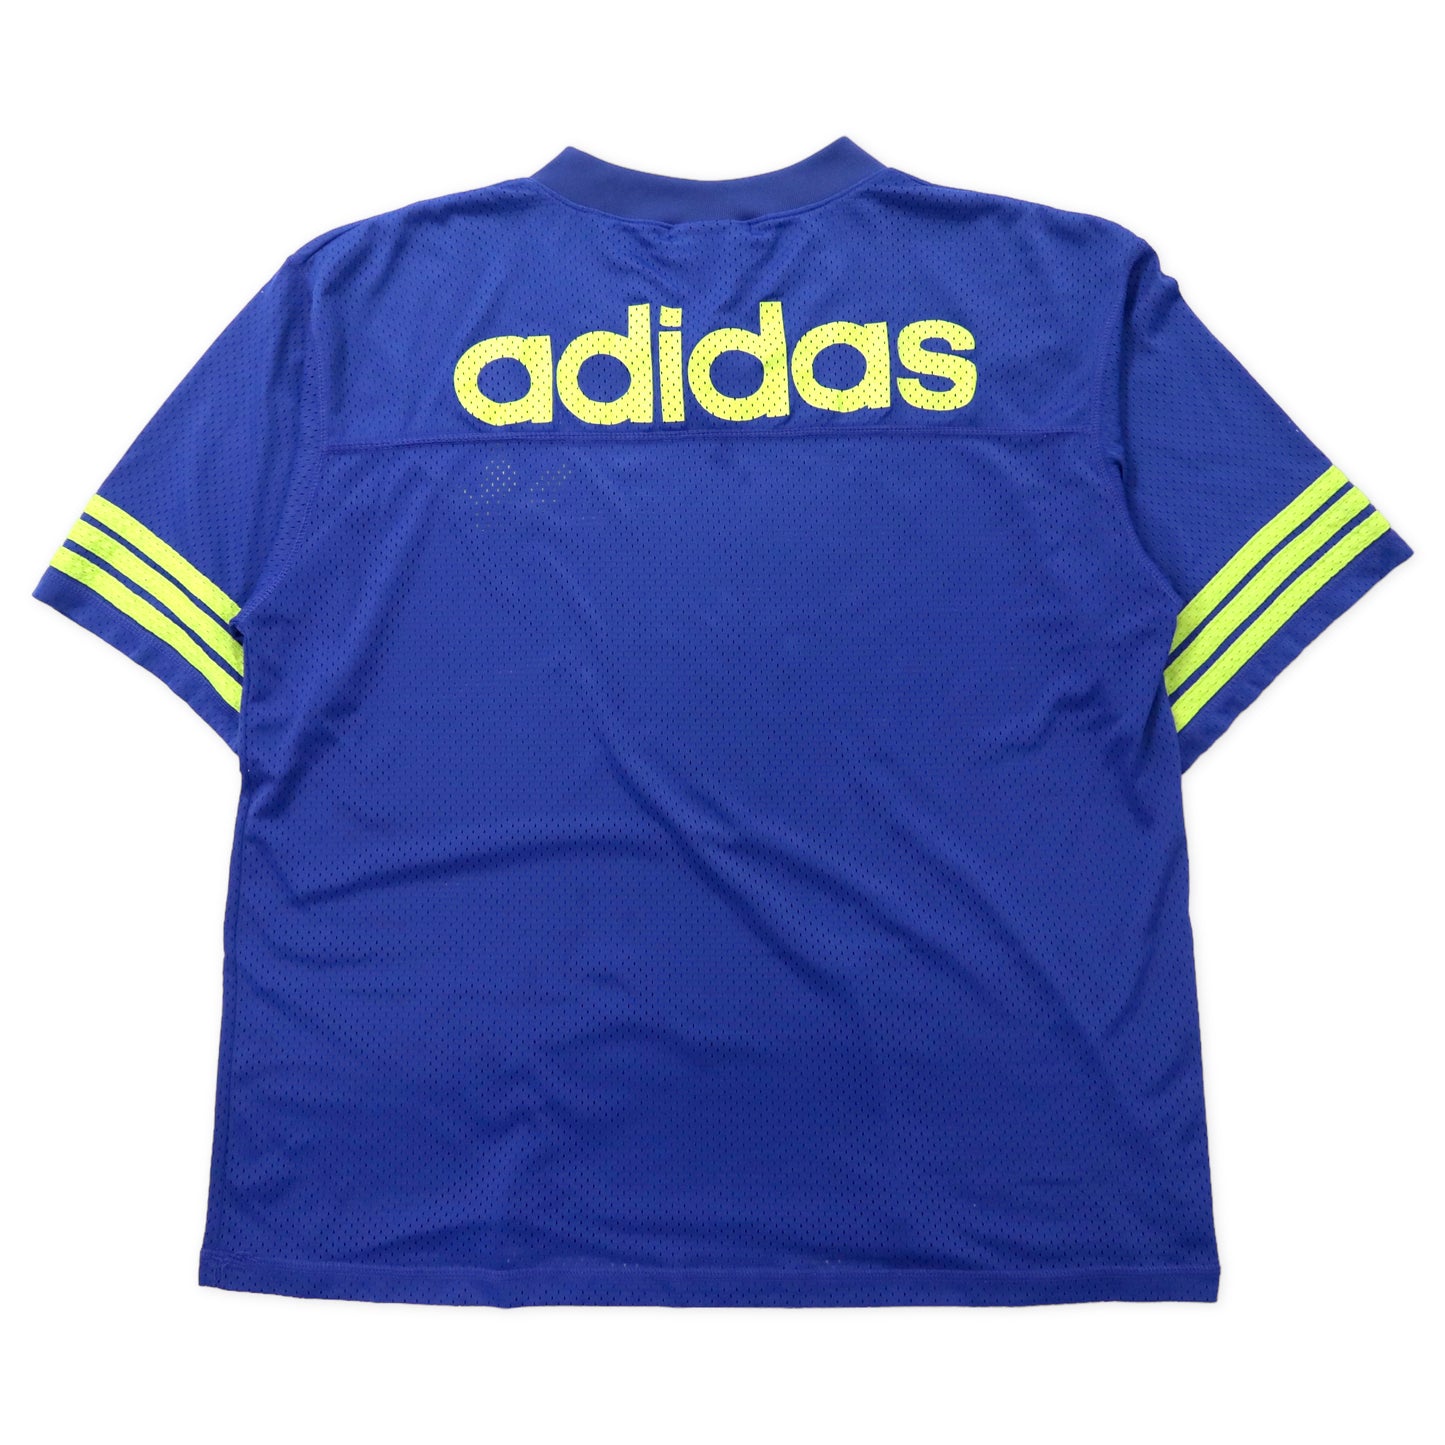 USA製 adidas ビッグサイズ メッシュ ゲームシャツ L ブルー ナイロン トレフォイルロゴ 国旗タグ 90年代